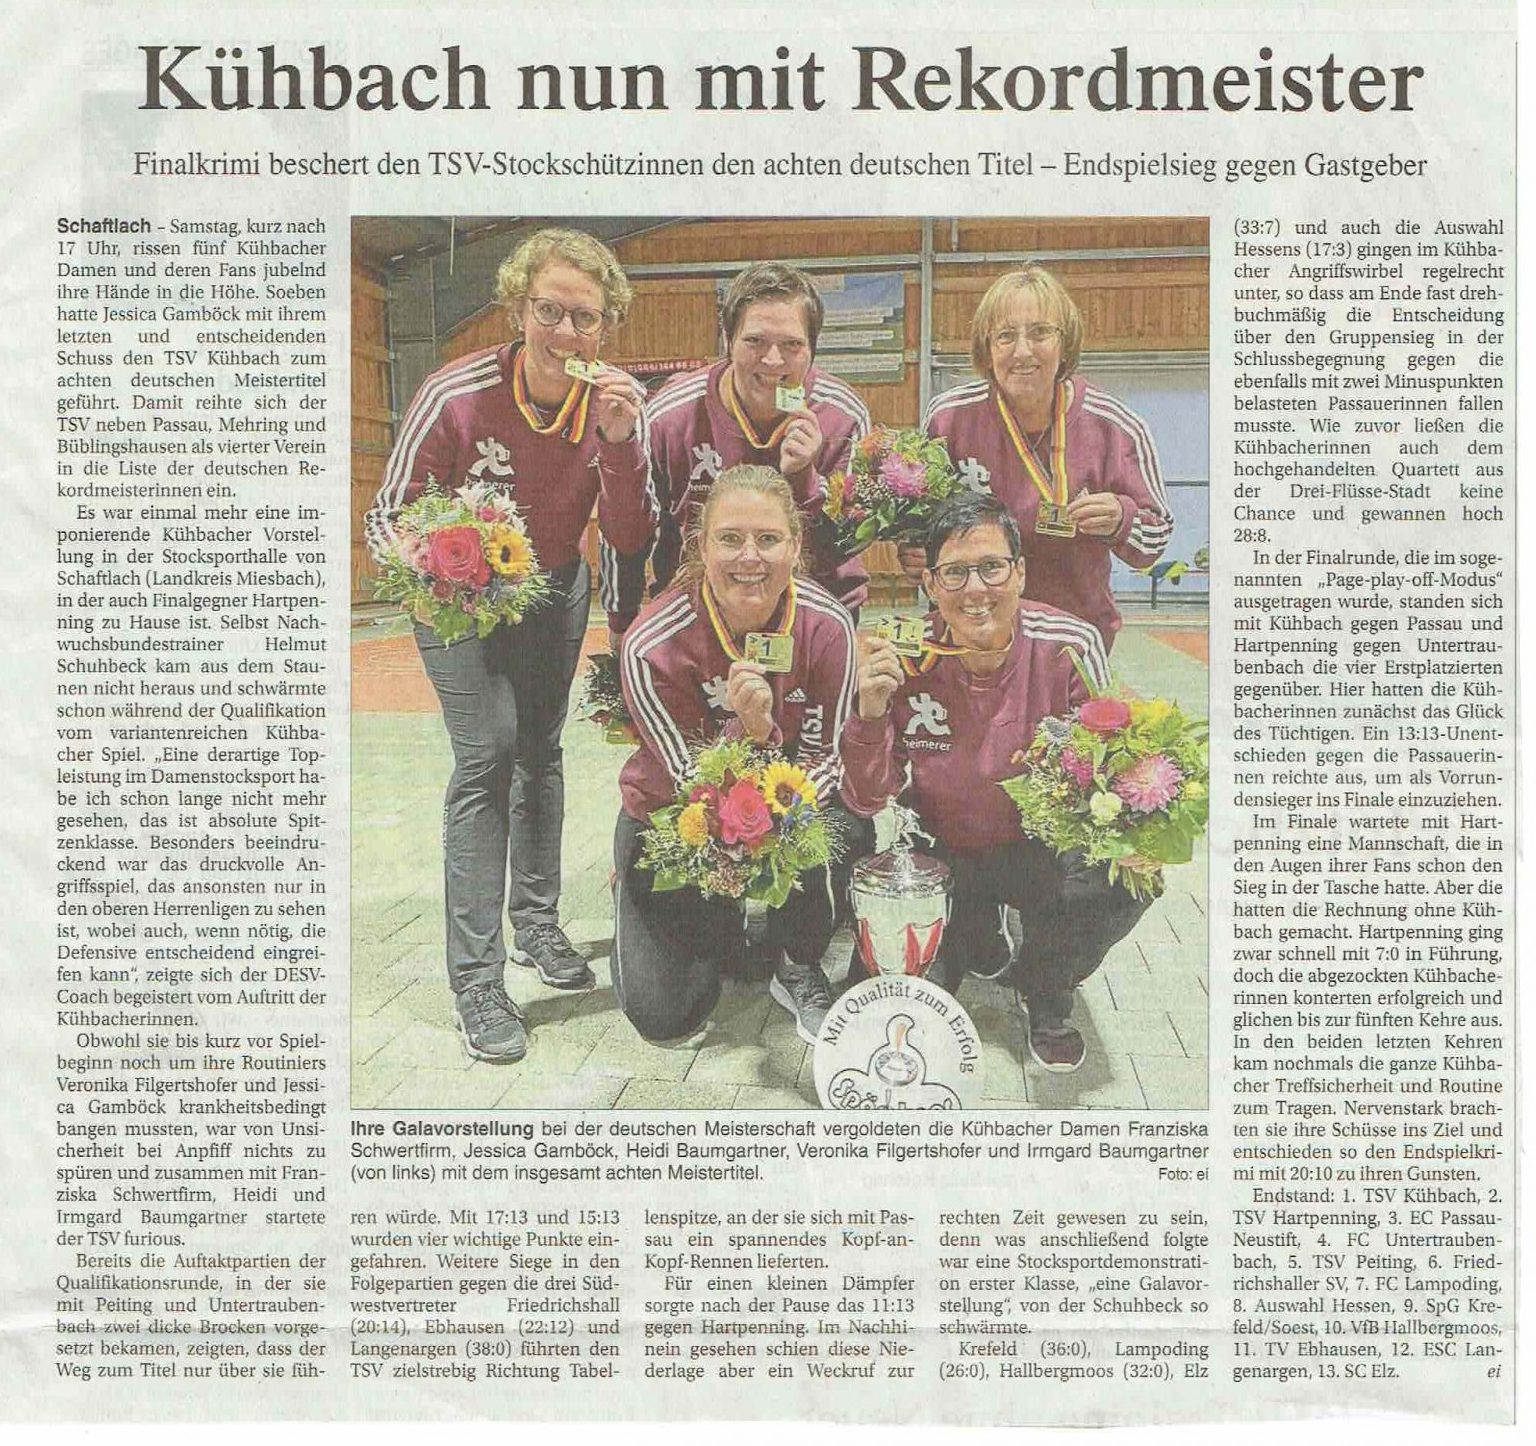 Kühbach nun mit Rekordmeister